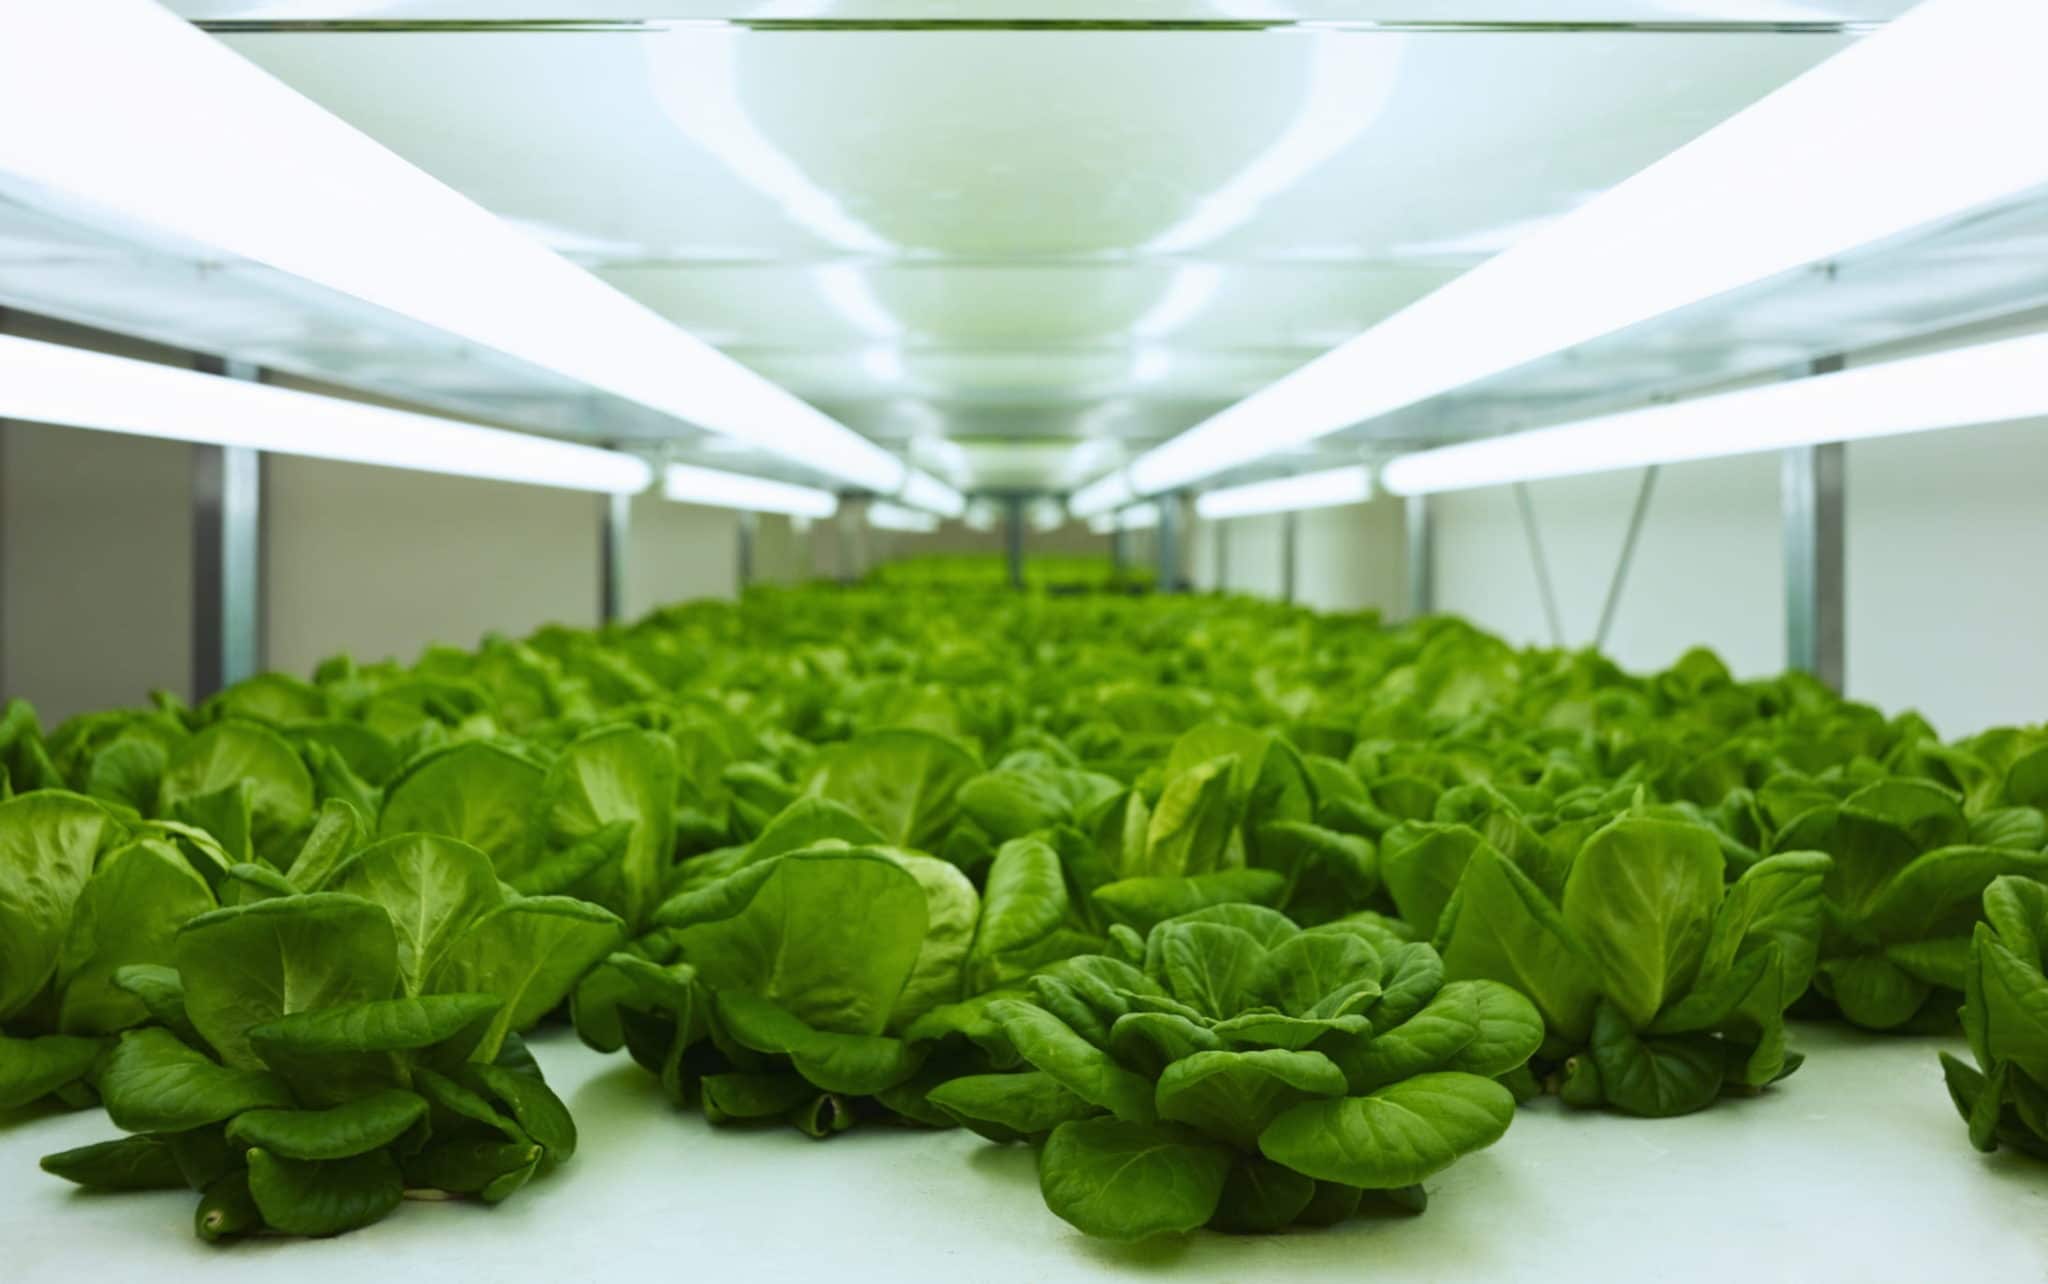 Jak rozpocząć uprawę roślin warzywnych w mini tunelu foliowym